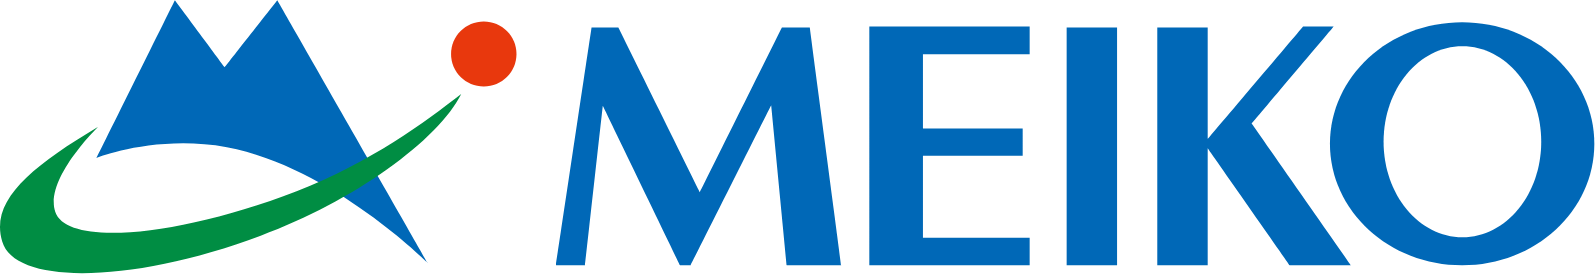 Meiko Electronics logo large (transparent PNG)